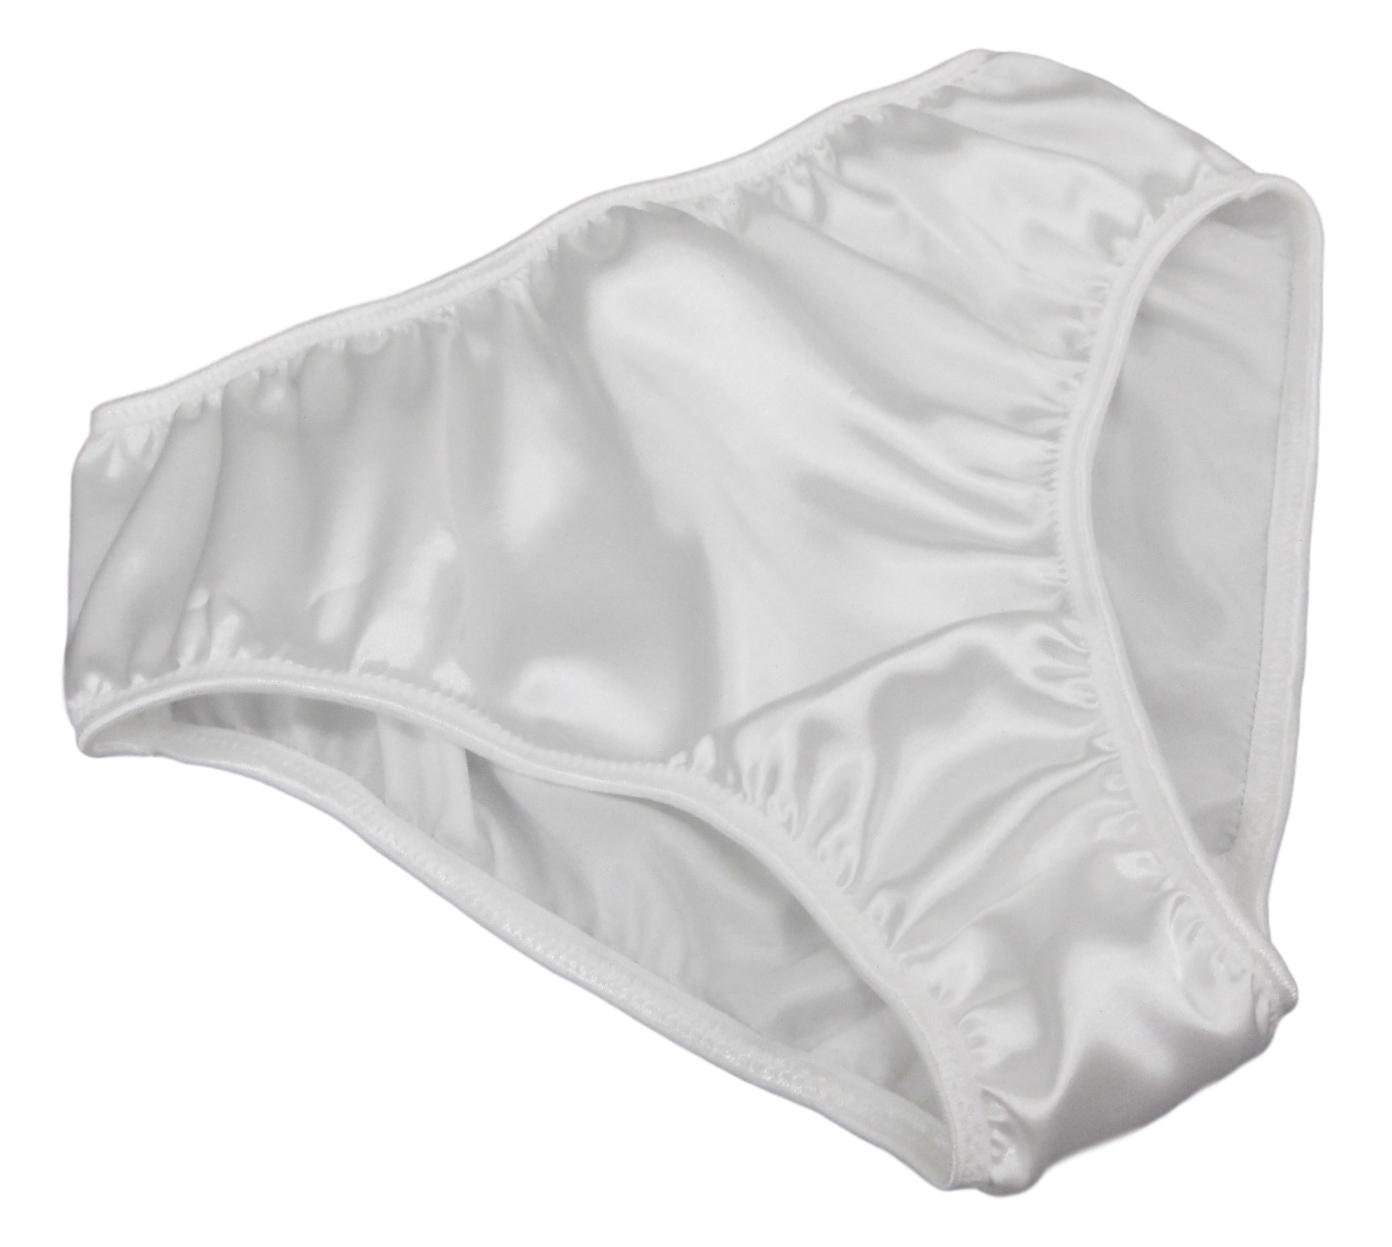 Venus: Silk Satin Super High Waisted Panties With Frills. 